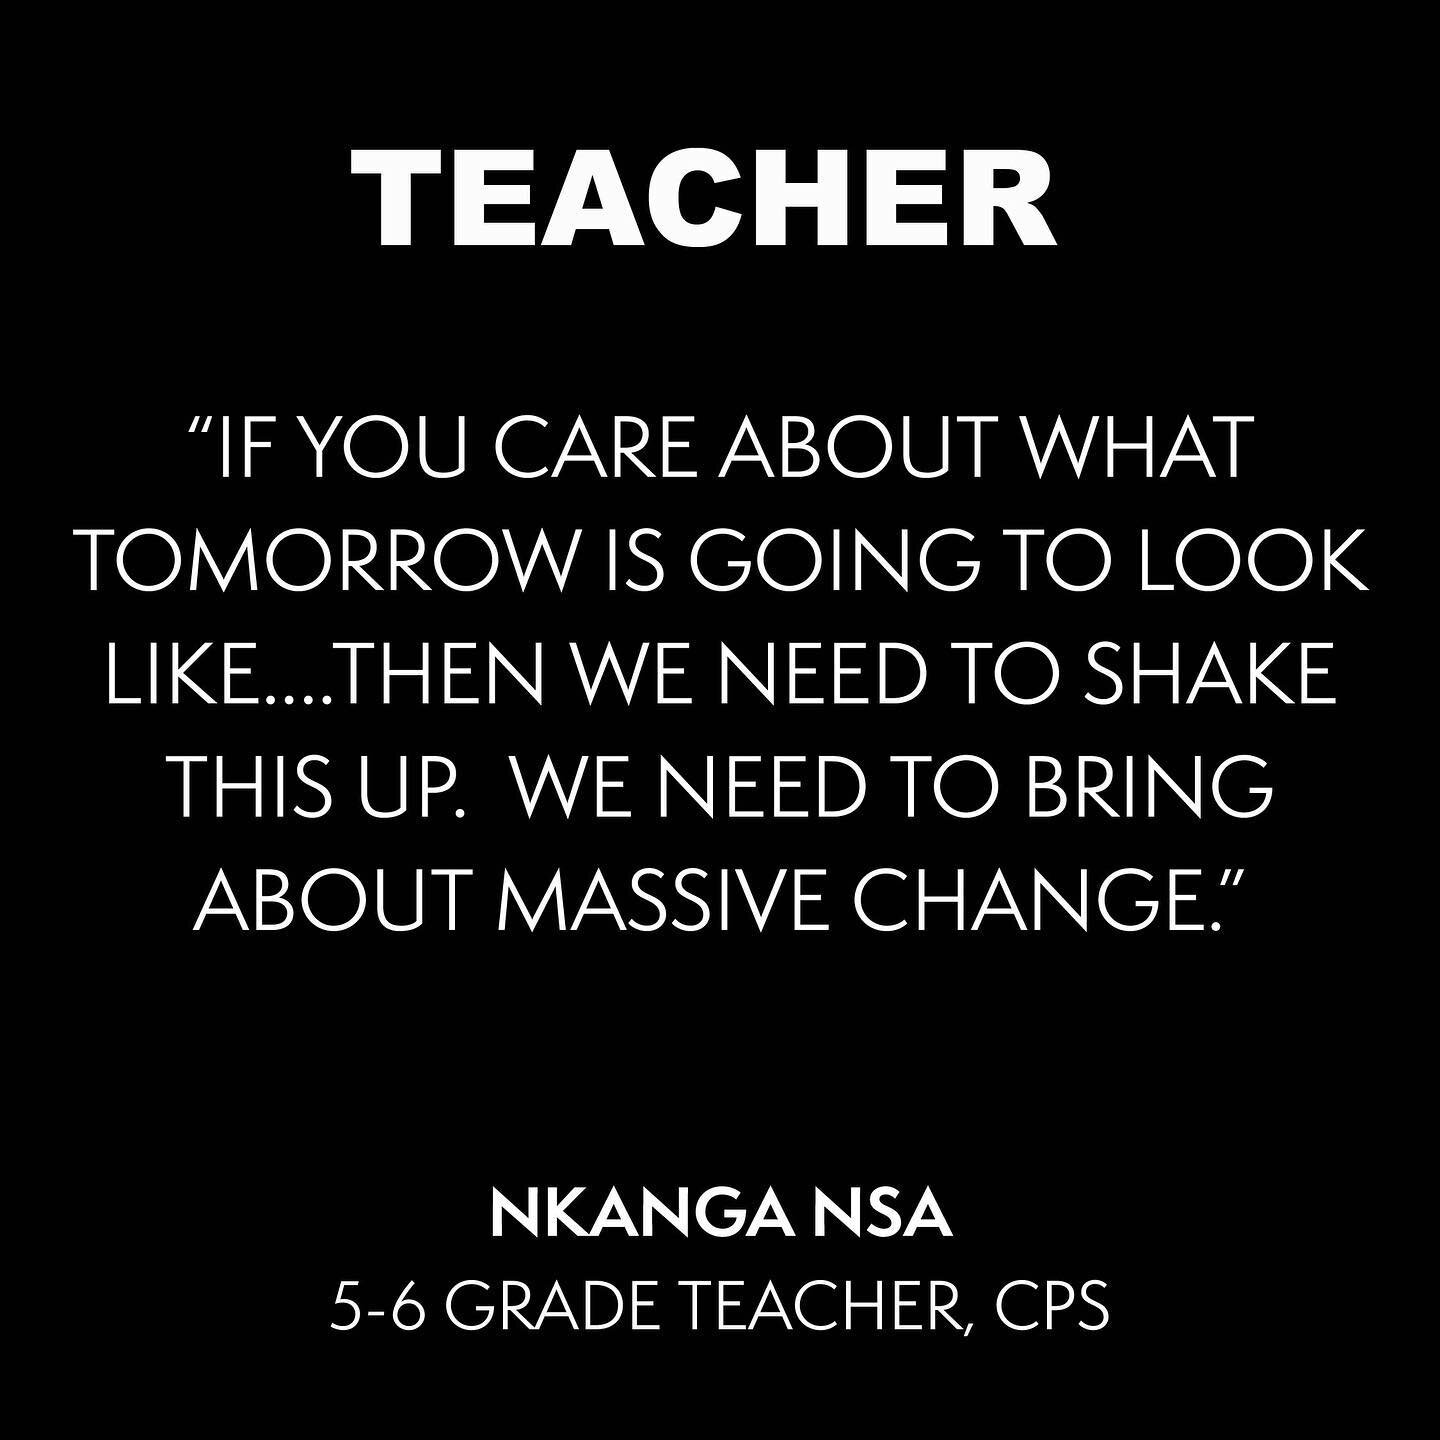 #teacher #cps #chicago #teachersofig #education